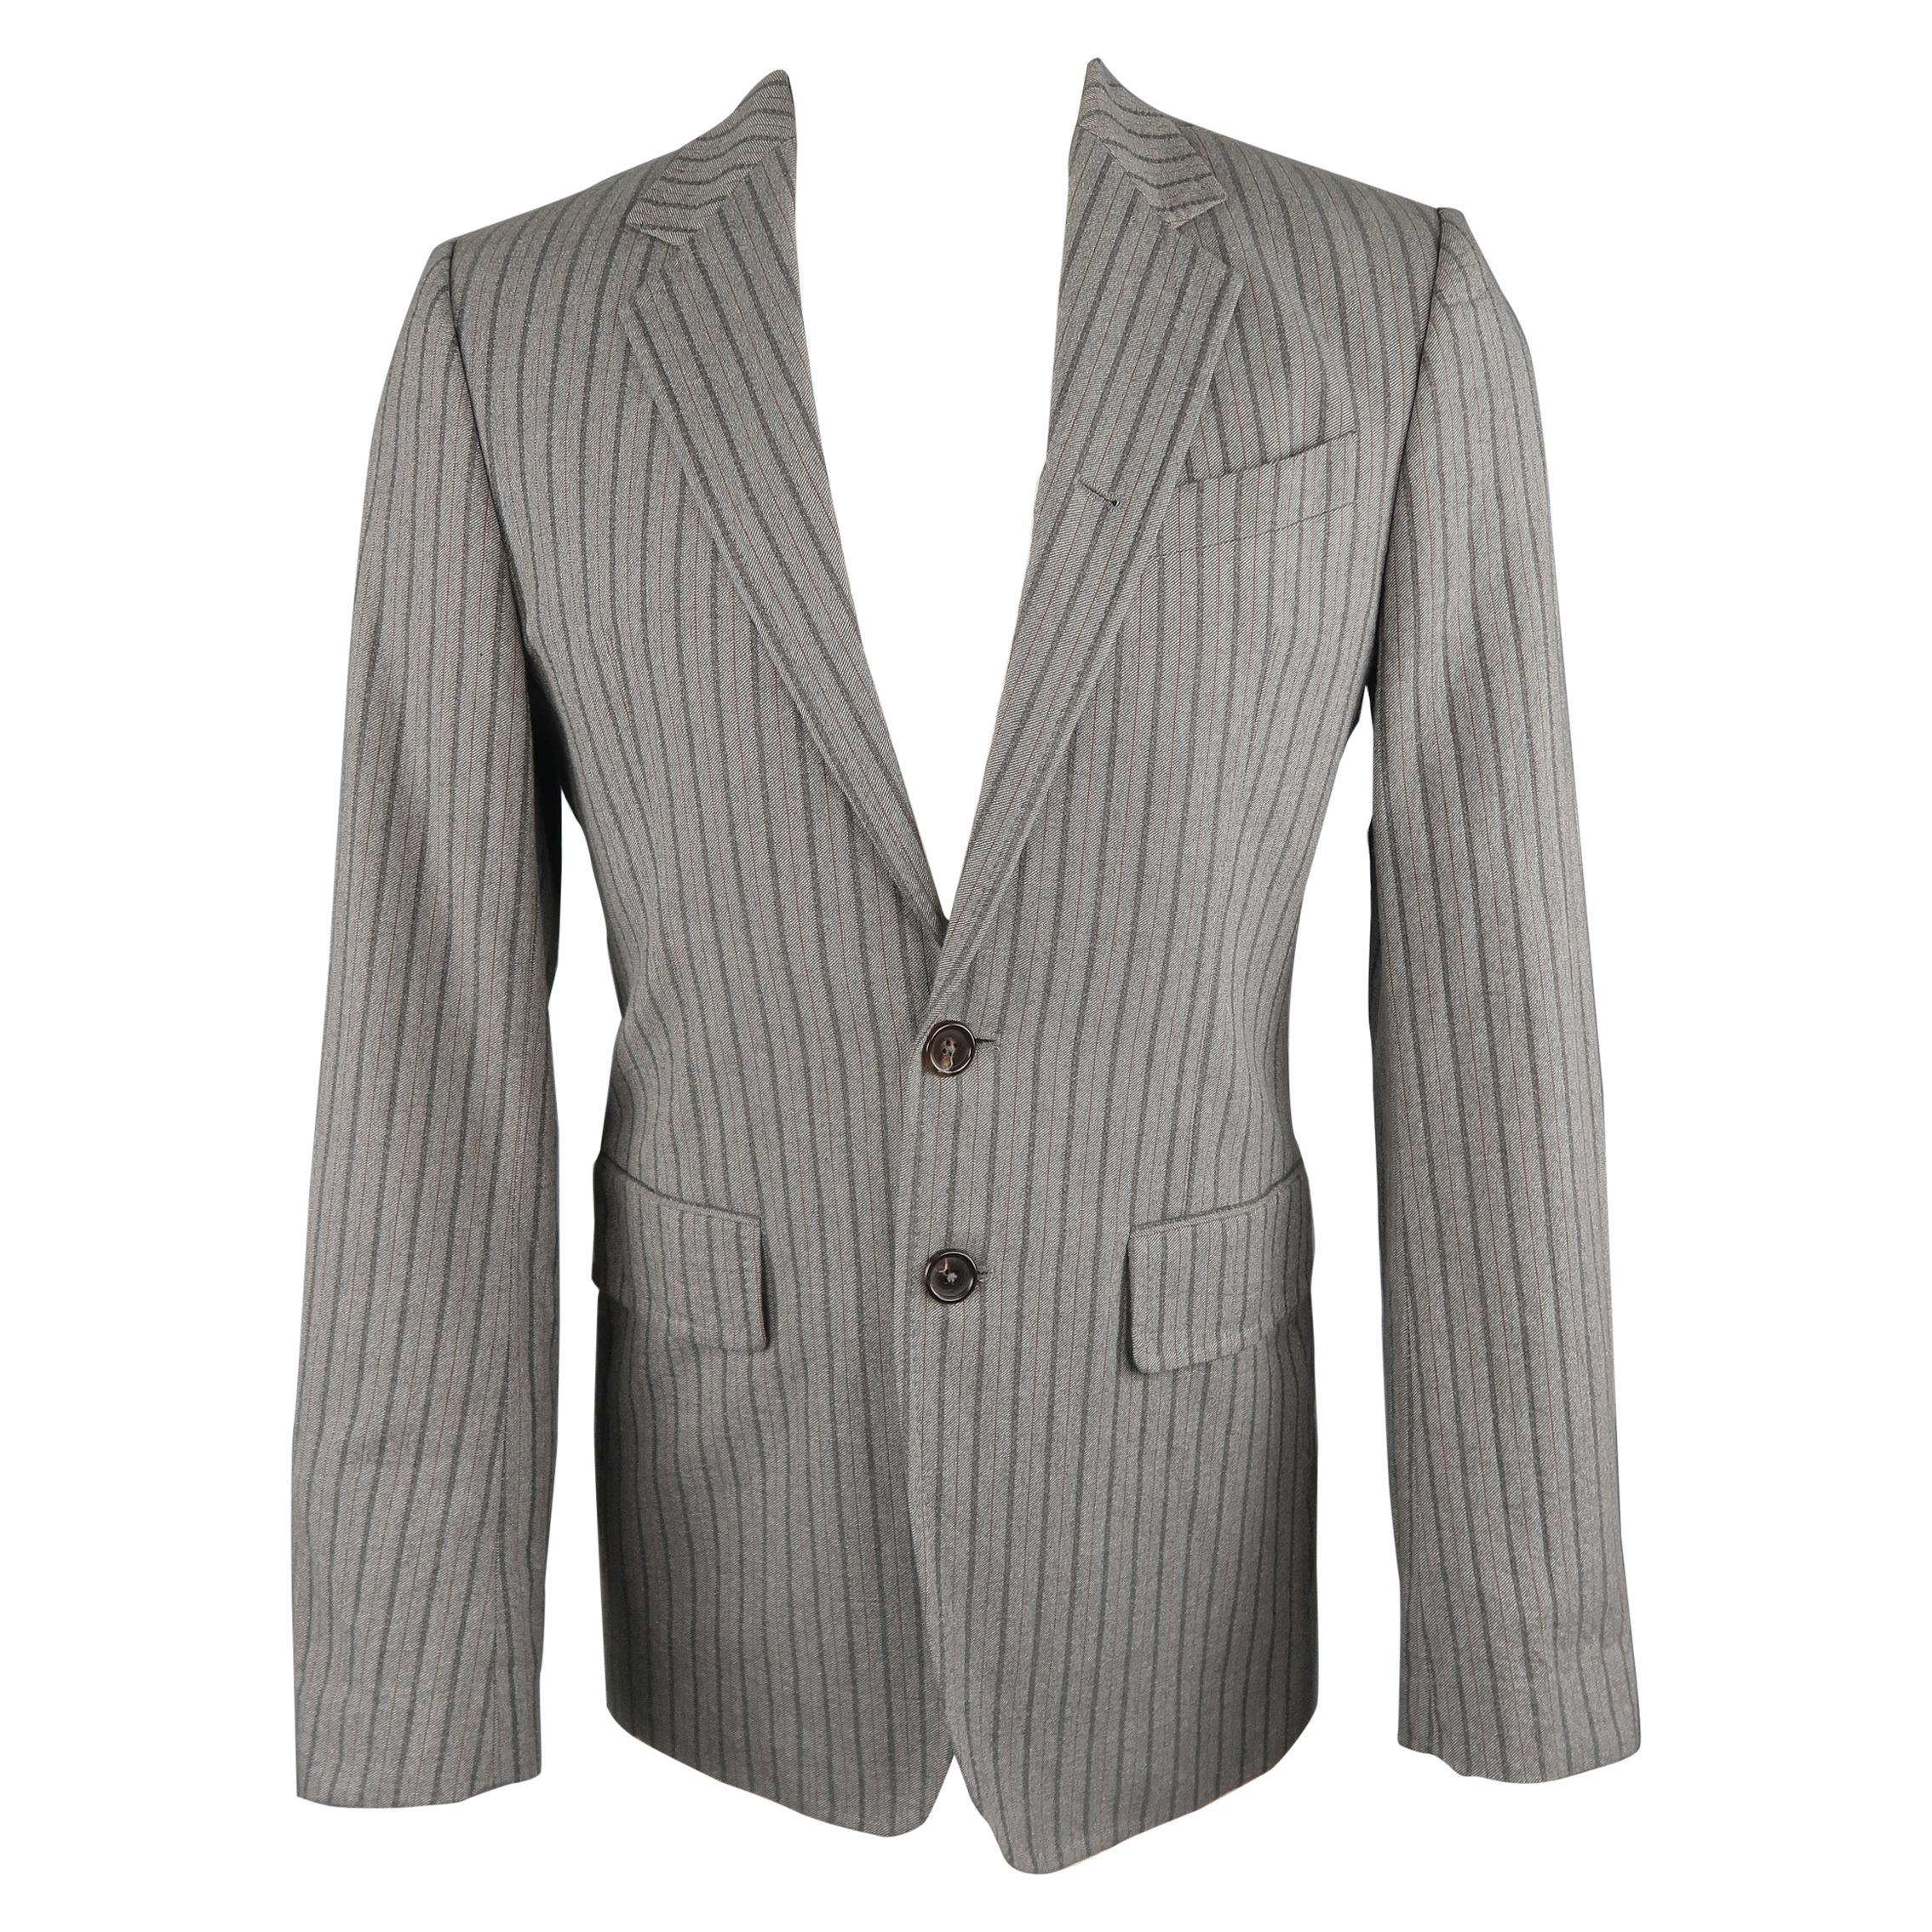 ANN DEMEULEMEESTER 38 Light Gray Striped Cotton Blend Notch Lapel Sport Coat